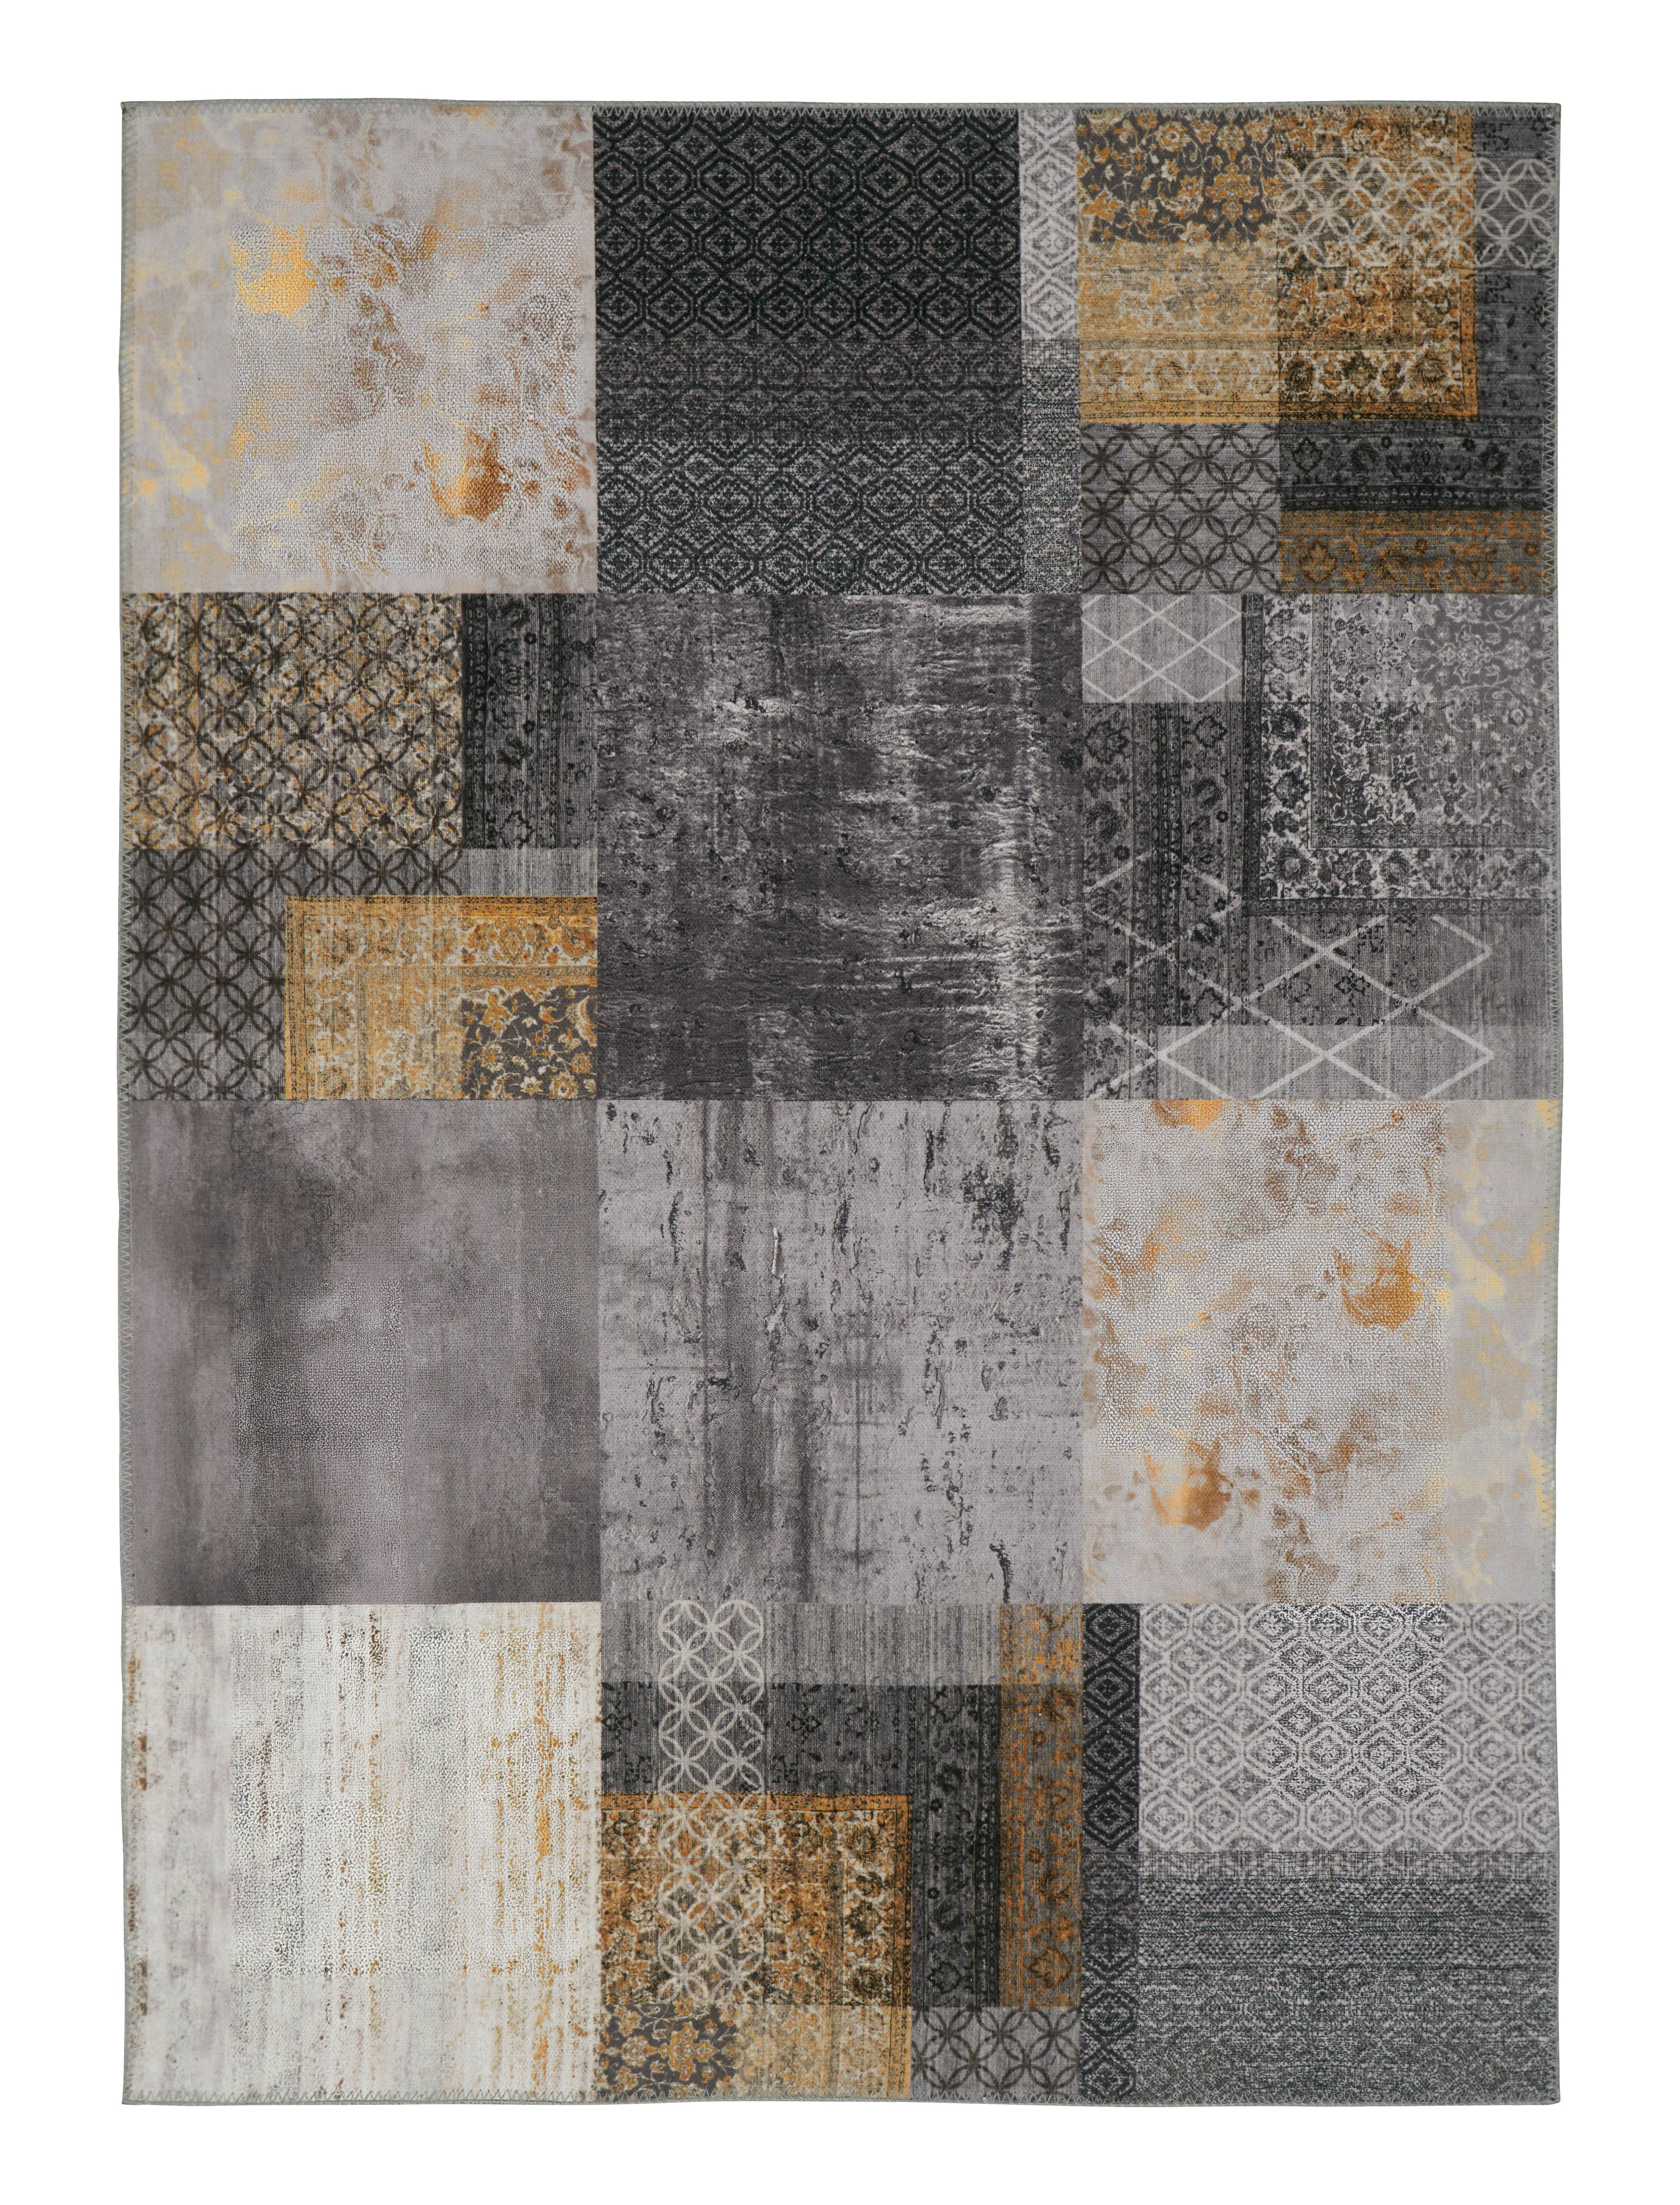 Koberec Tkaný Na Plocho Edessa 3, 160/230cm - šedá/barvy zlata, Moderní, textil (160/230cm) - Modern Living